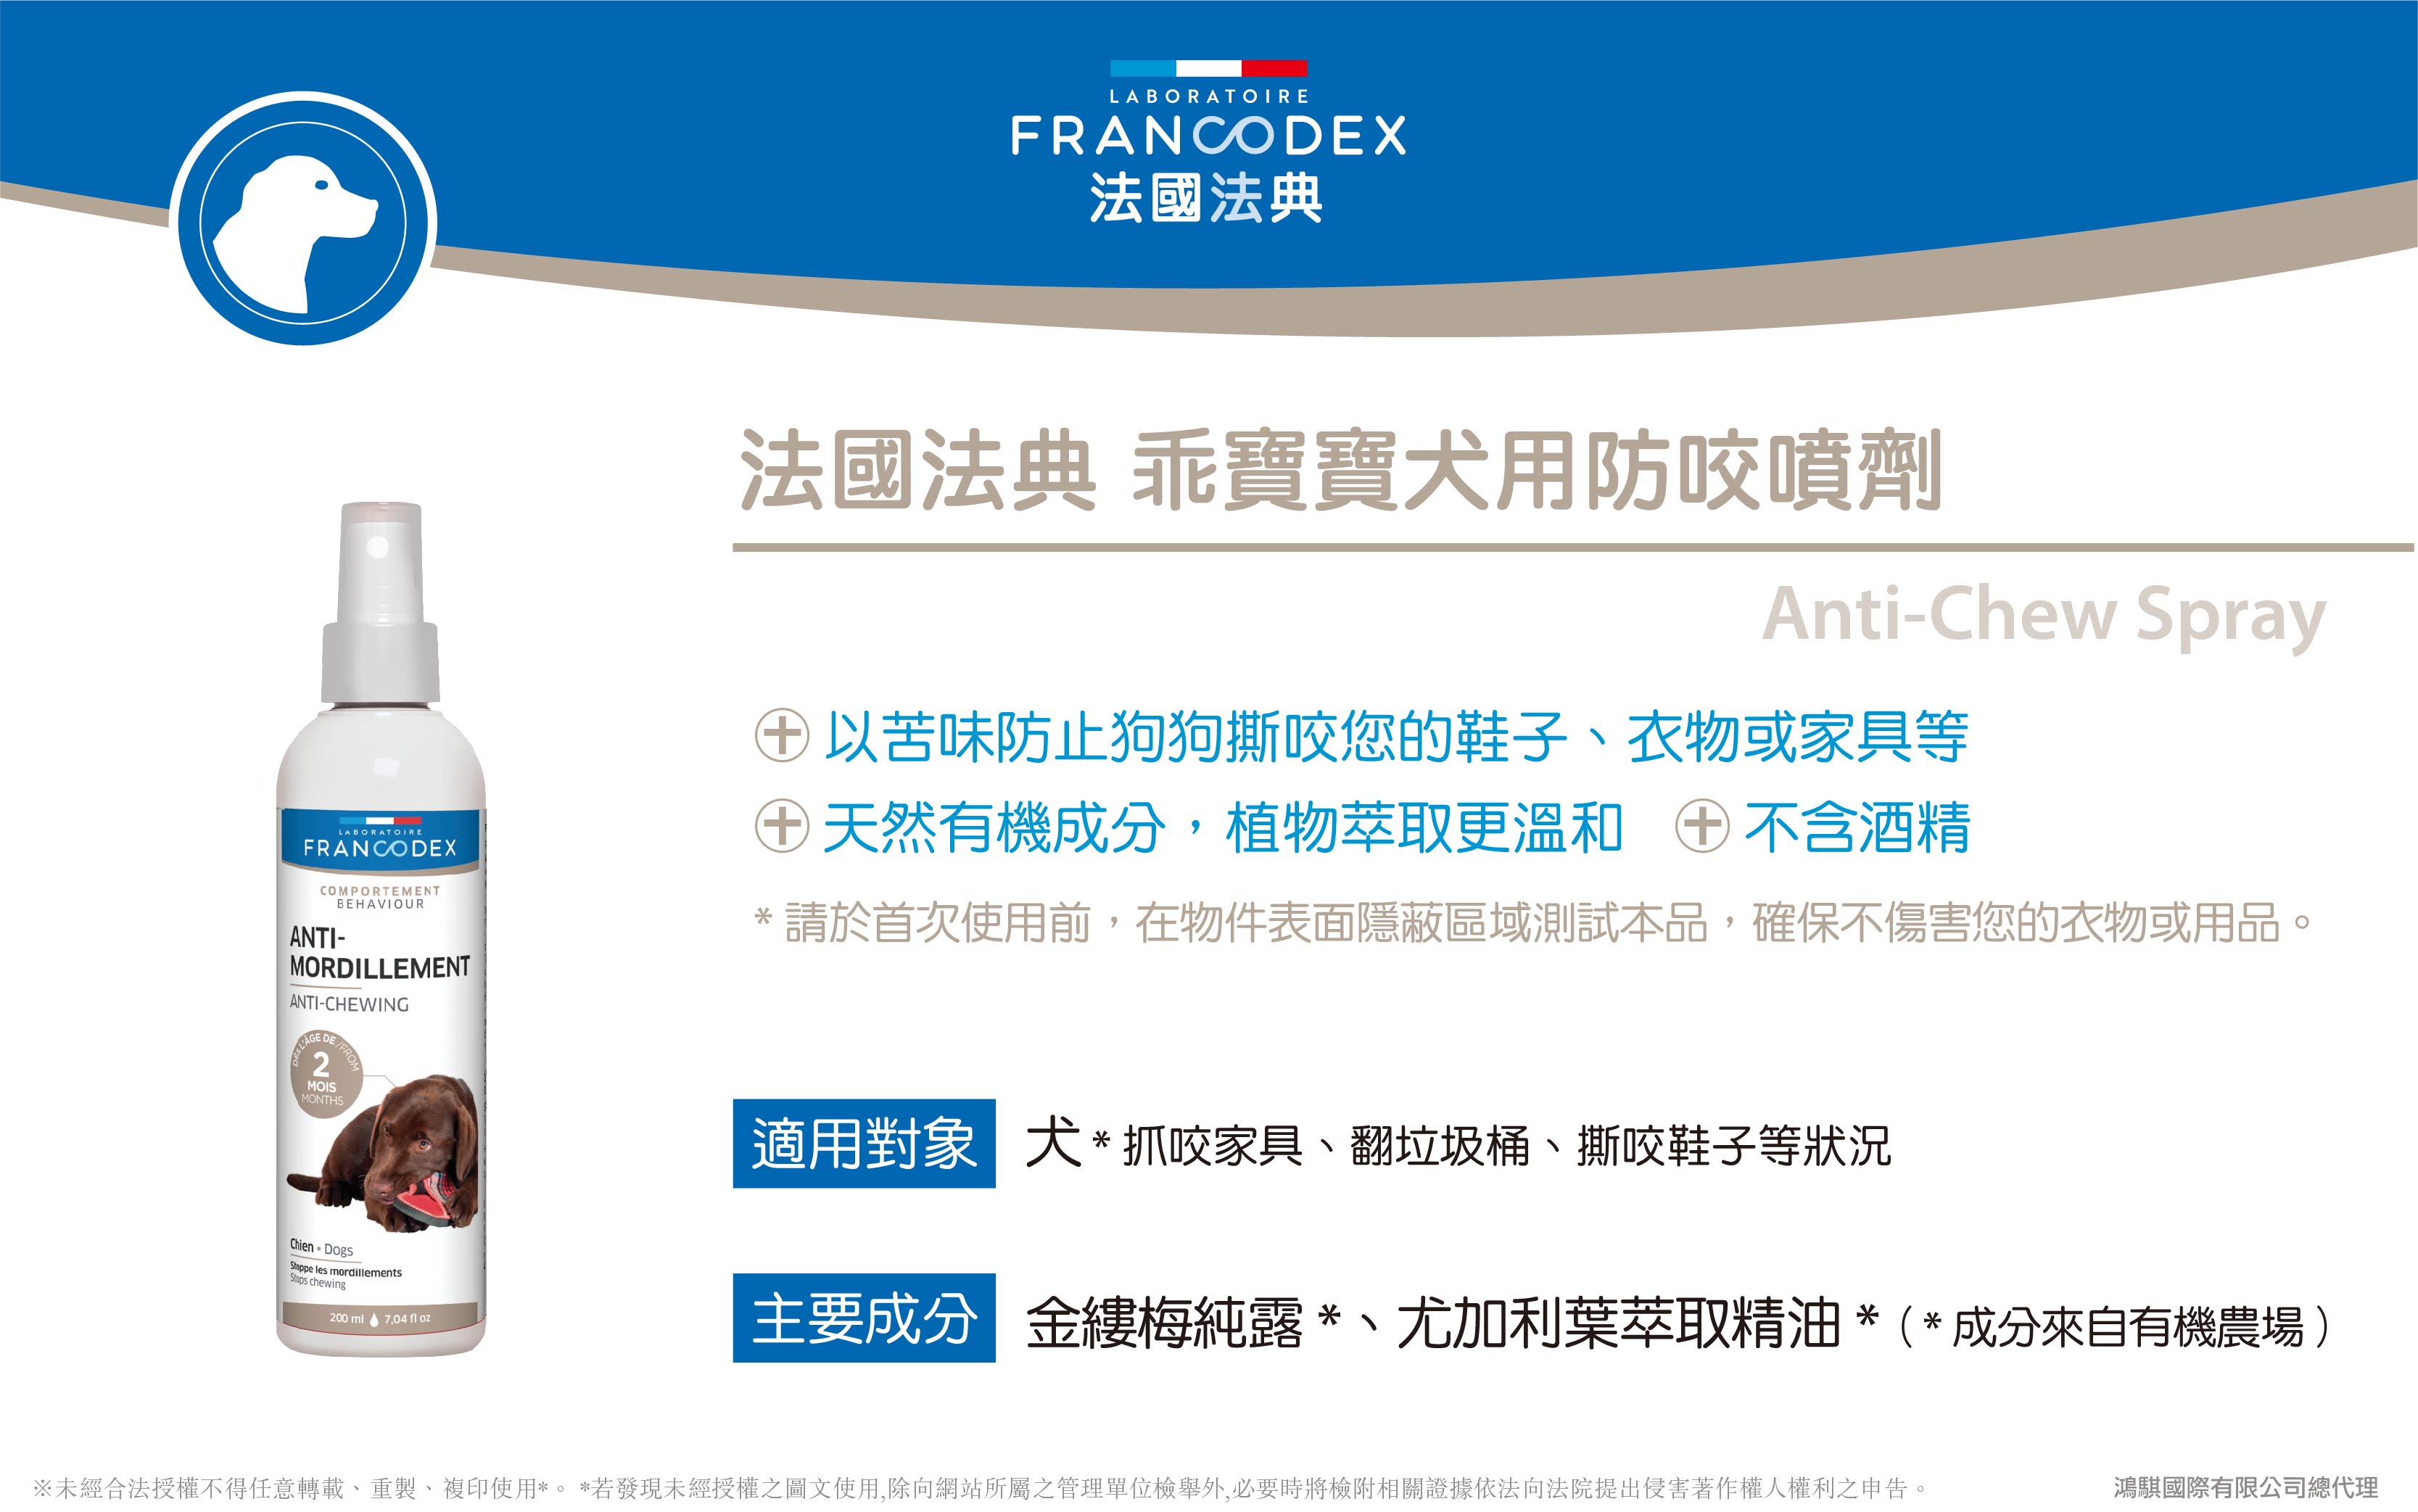 【Francodex】官網-產品介紹_28法國法典乖寶寶犬用防咬噴劑